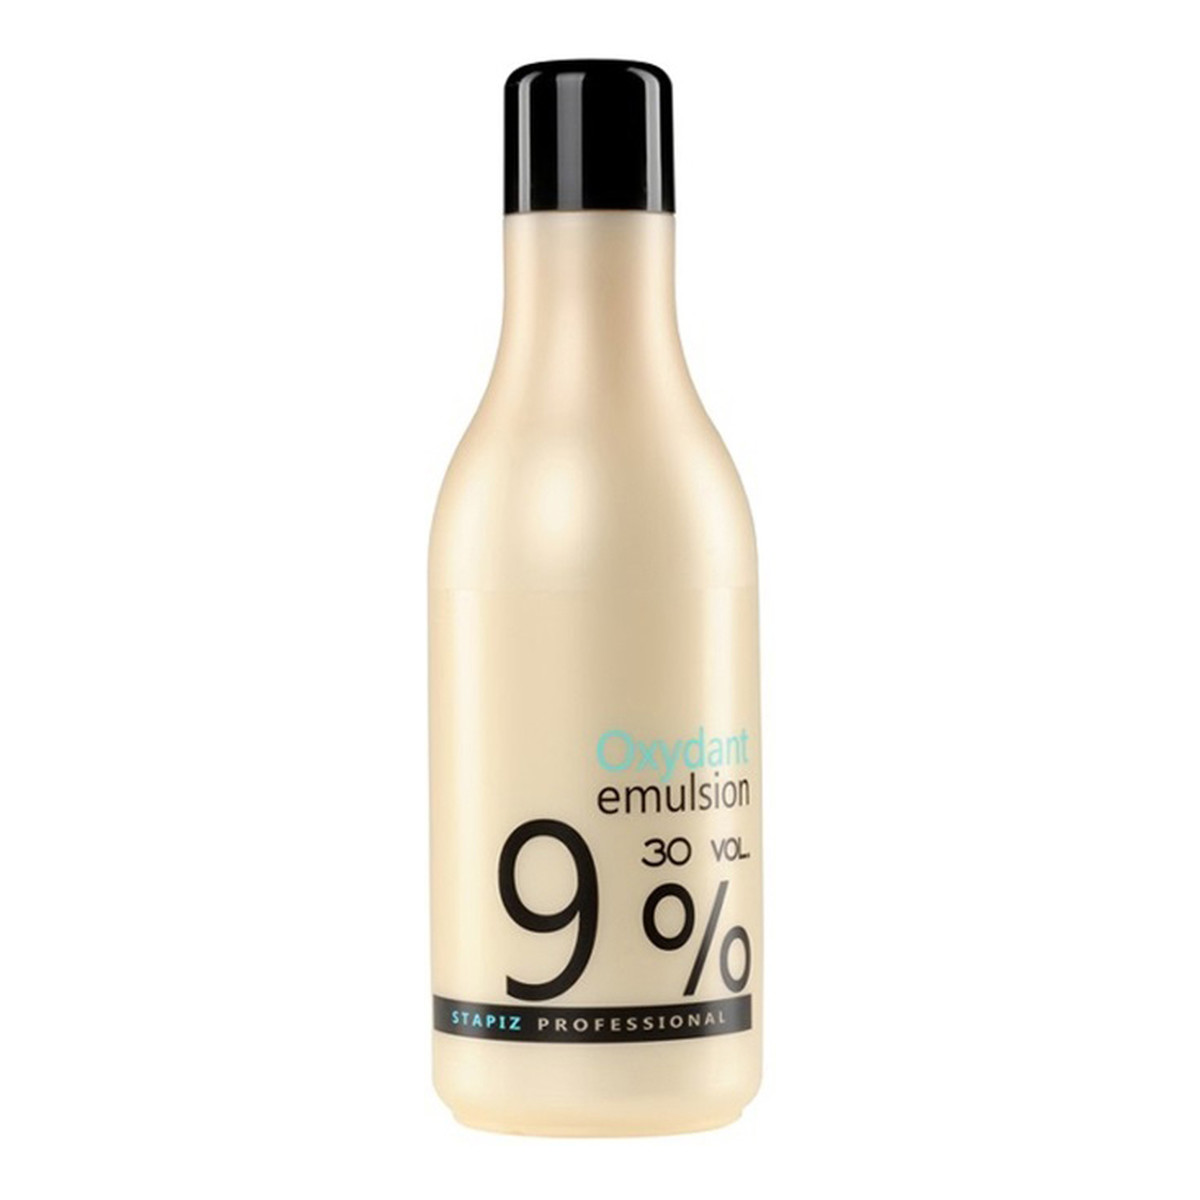 Stapiz Professional Oxydant Emulsion 9% Woda utleniona w kremie 1000ml